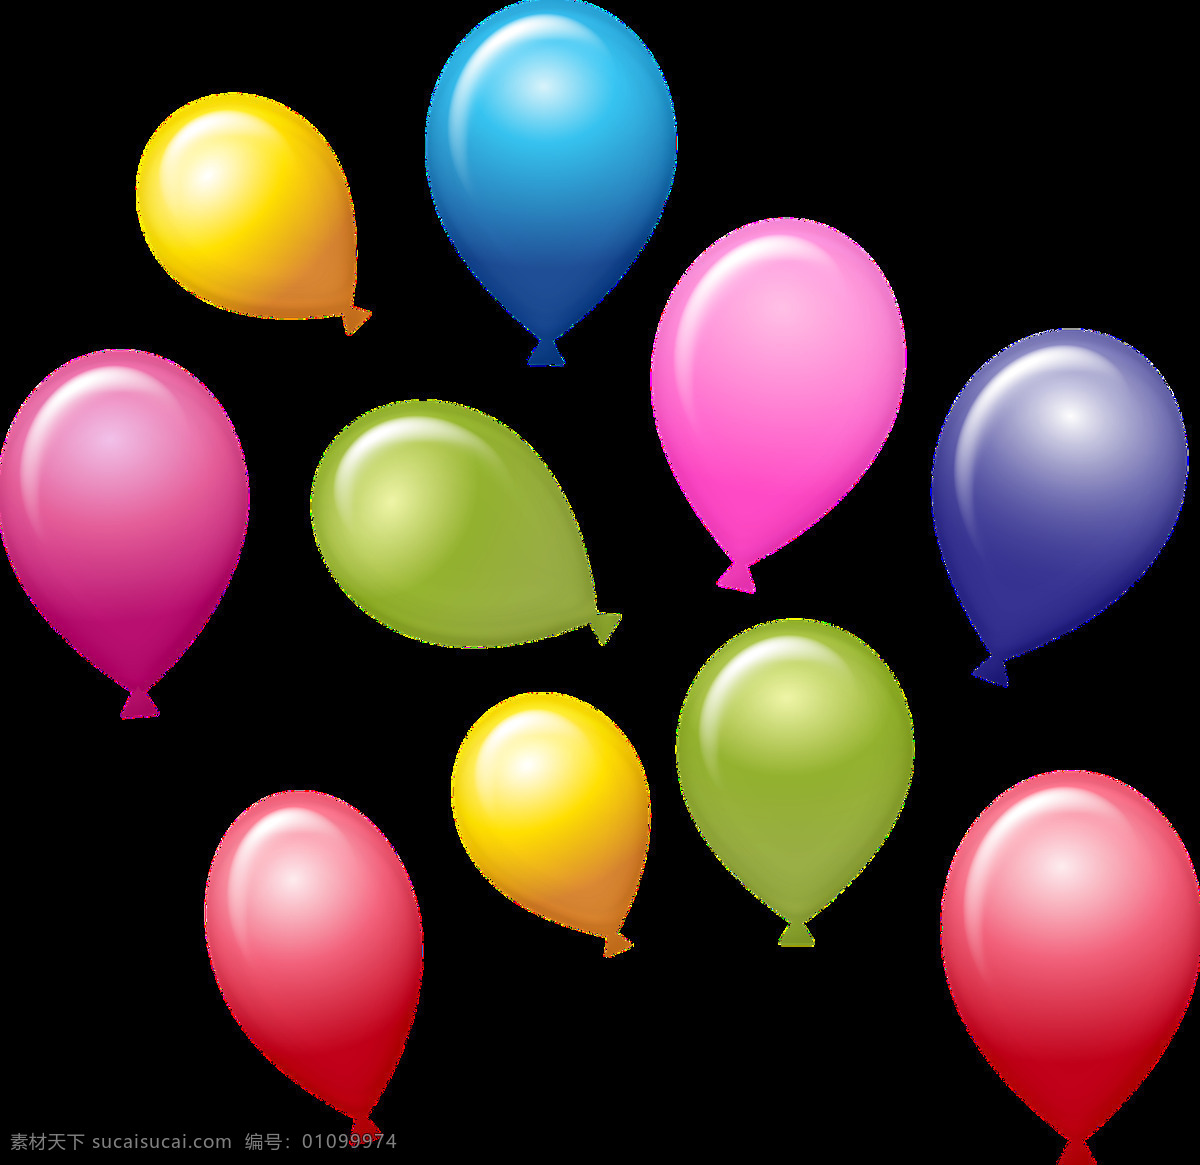 彩色气球 五颜六色气球 卡通 手绘 卡通设计